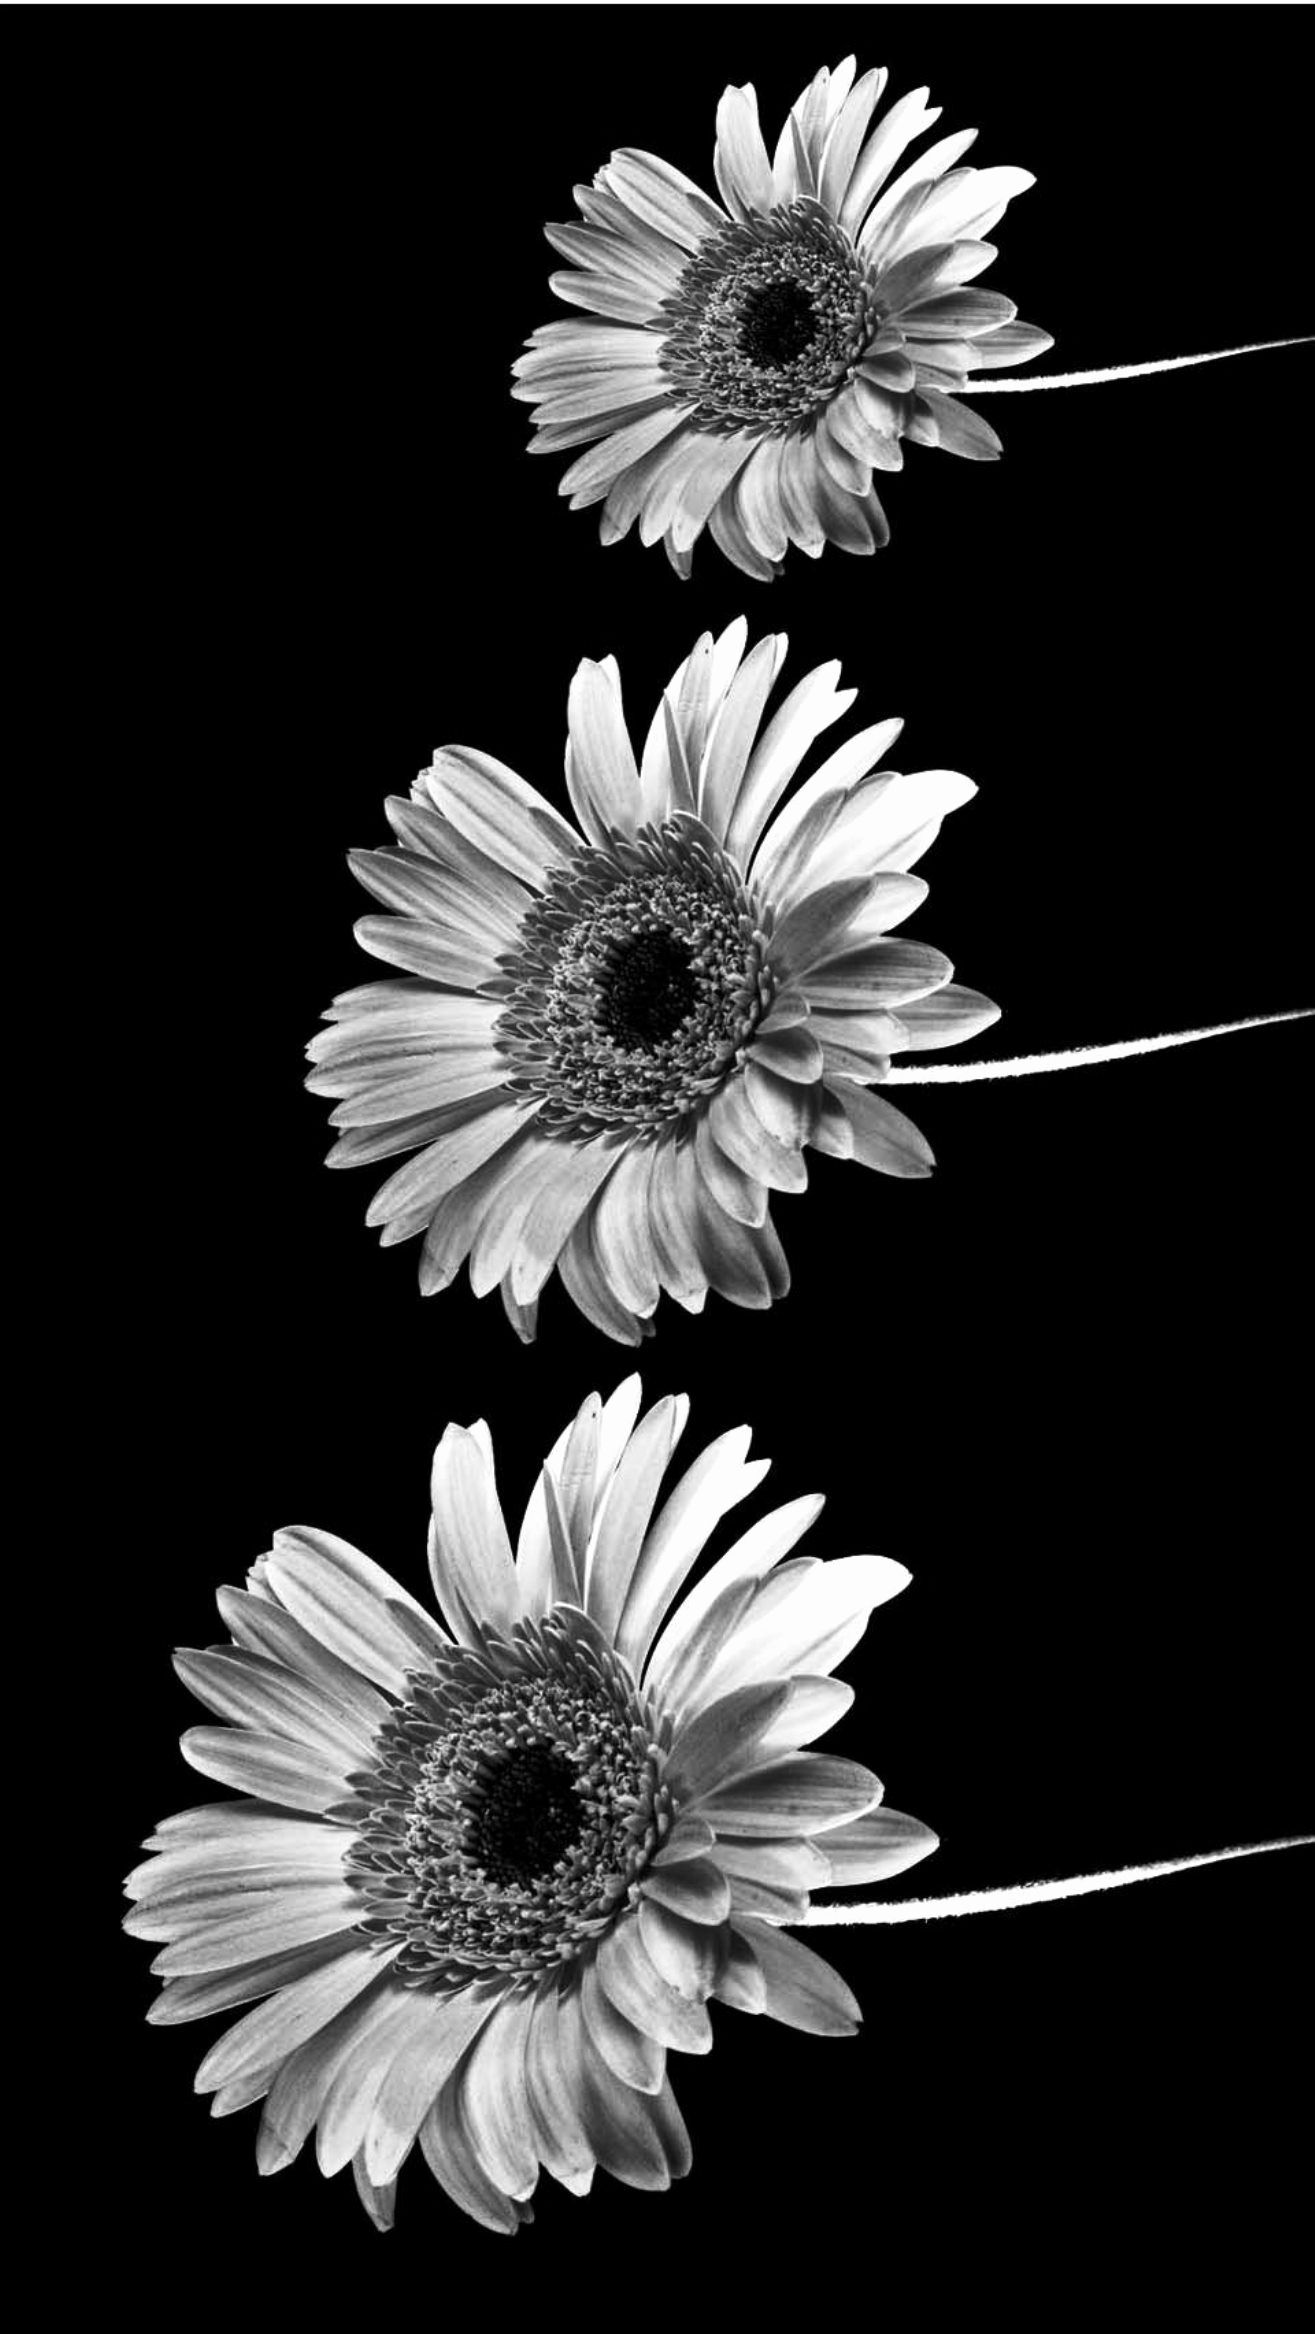 نمای سیاه و سفید دلنشین از سه شاخه گل استر محبوب 